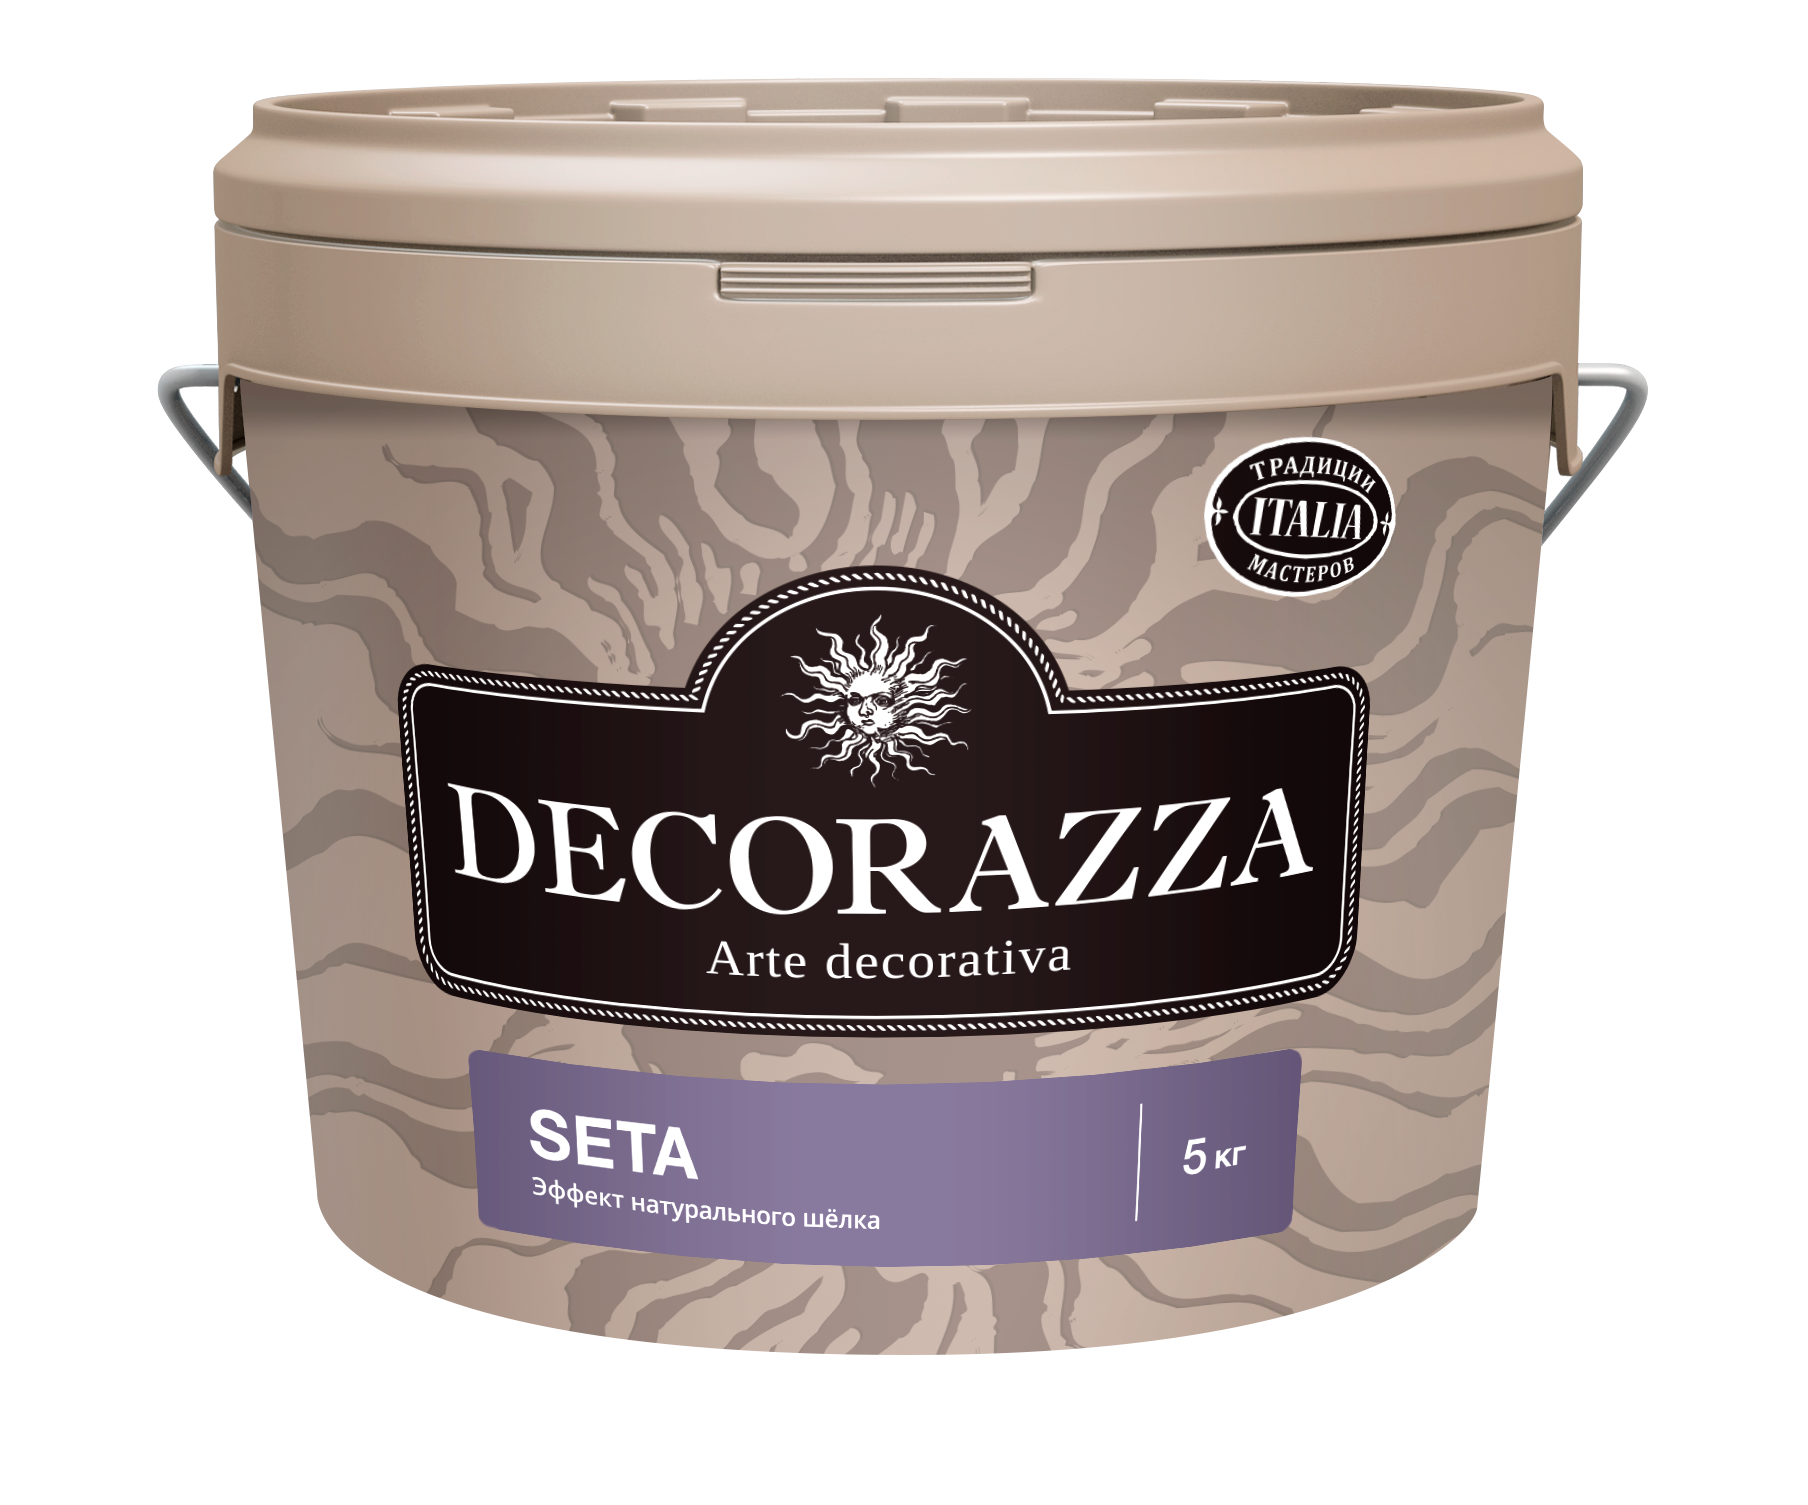 Декоративная штукатурка Decorazza Seta Argento ST 001, серебро, 5 кг декоративная металлизированная краска decorazza